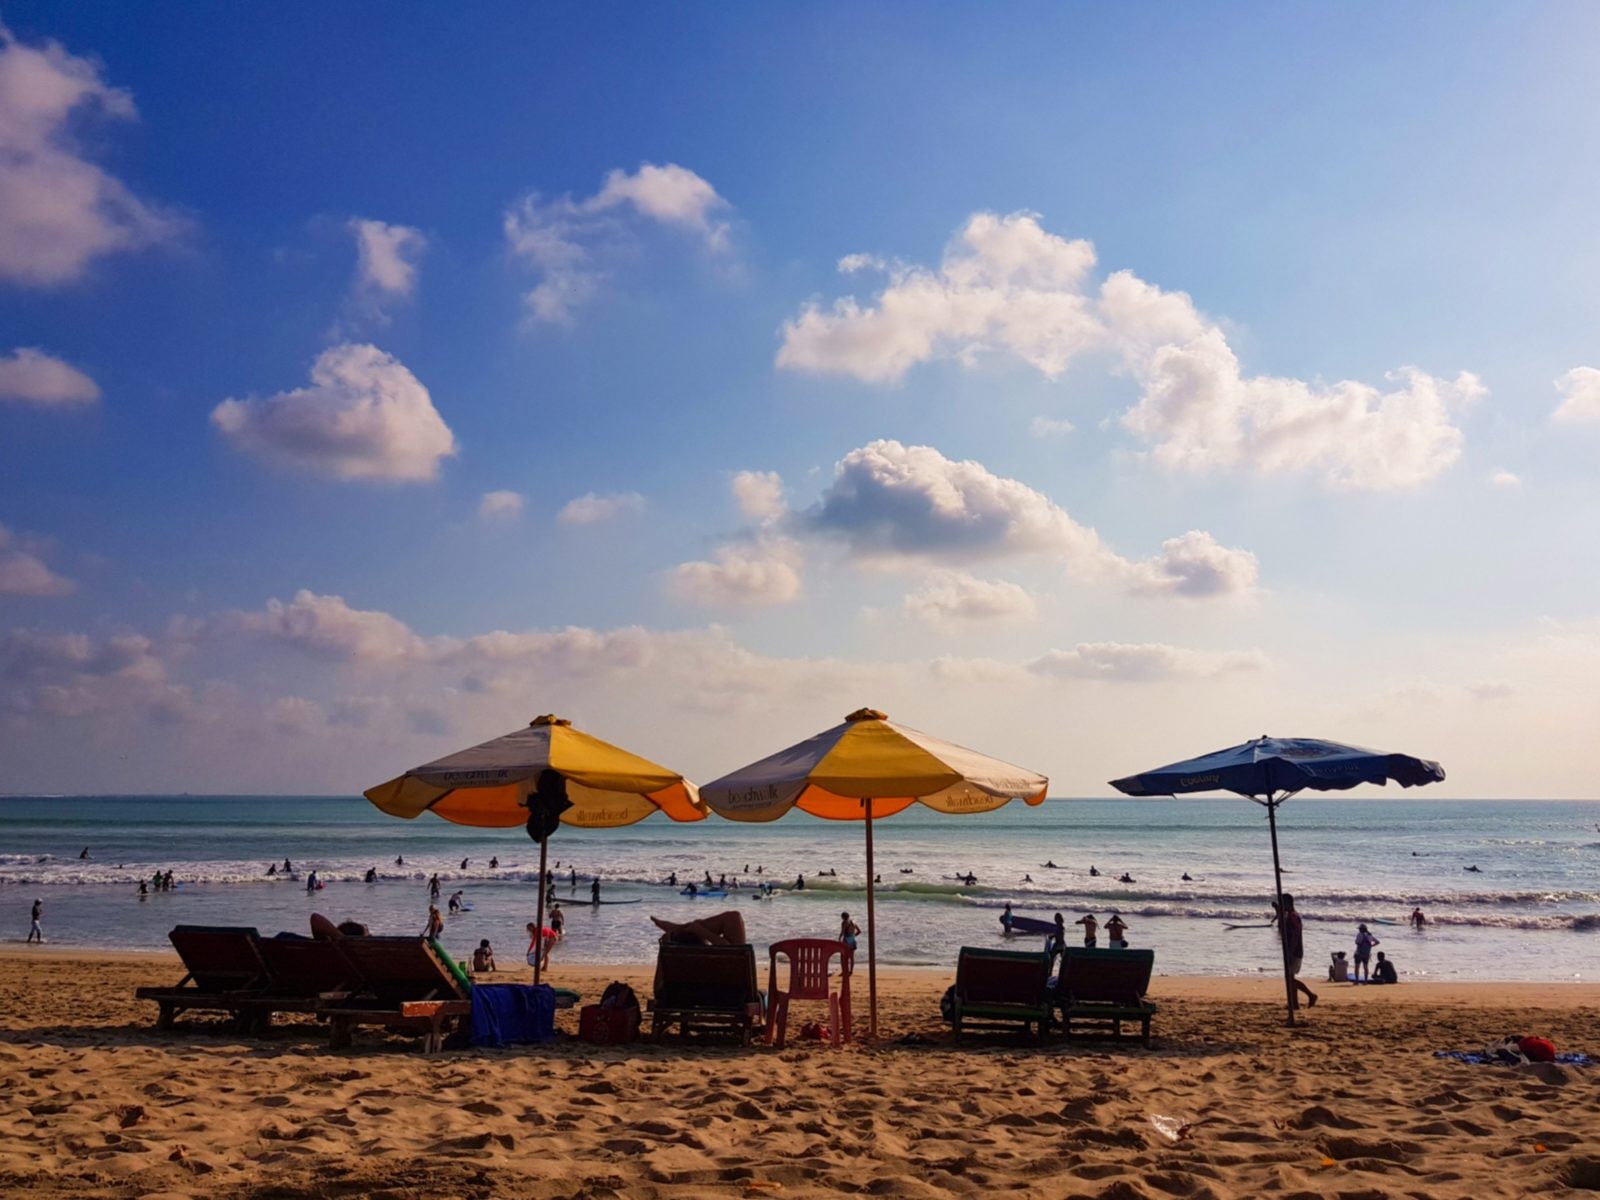  Pantai  Kuta  Bali  7 Aktivitas Top Januari 2021 TravelsPromo